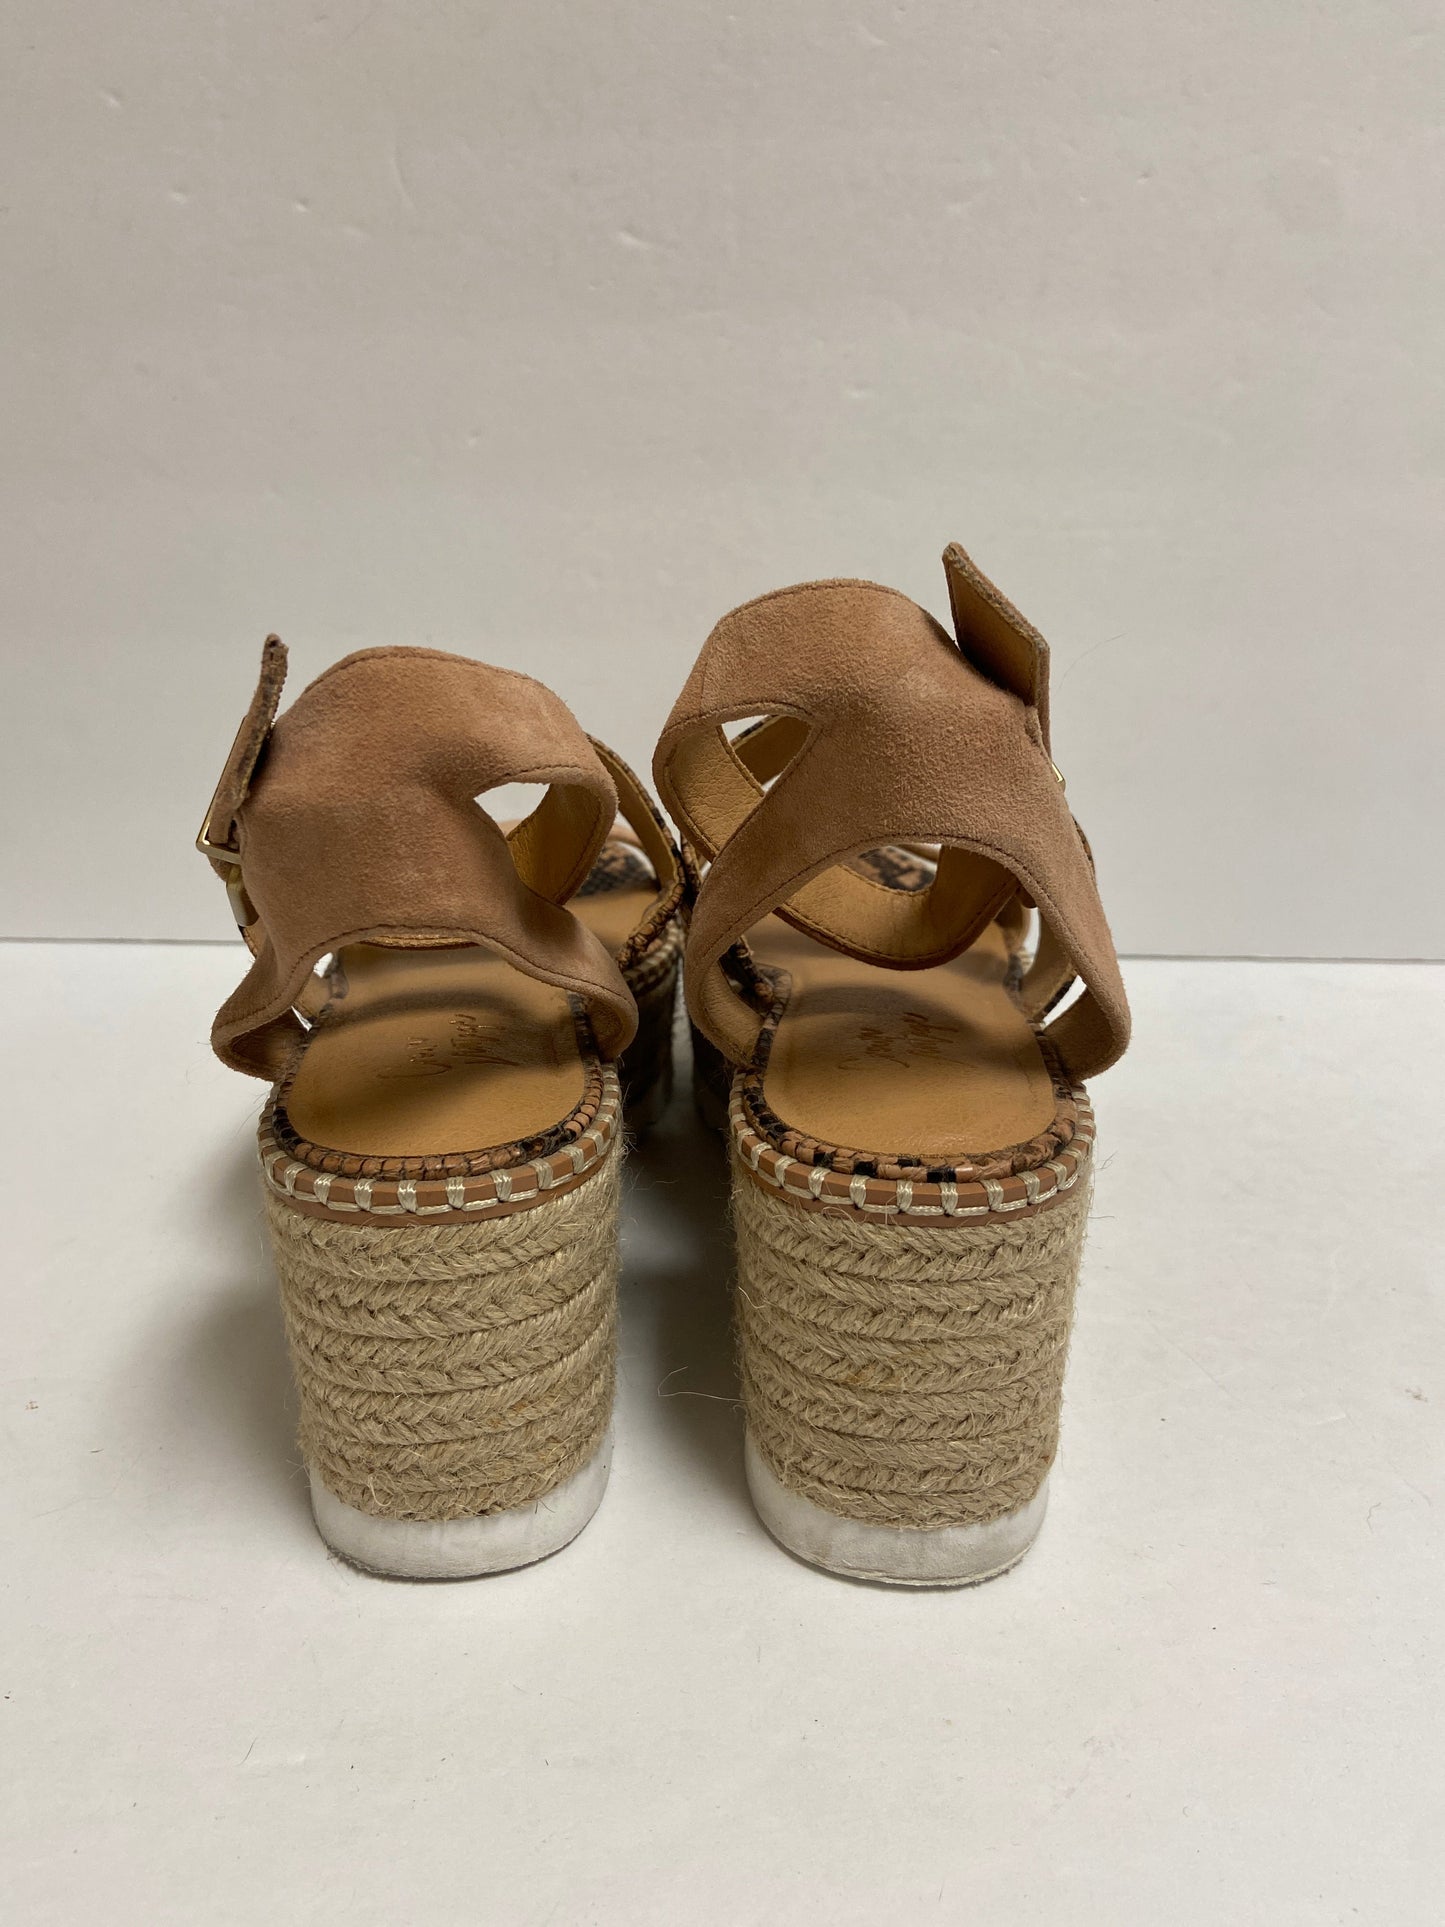 Sandals Heels Wedge By Crown Vintage  Size: 8.5